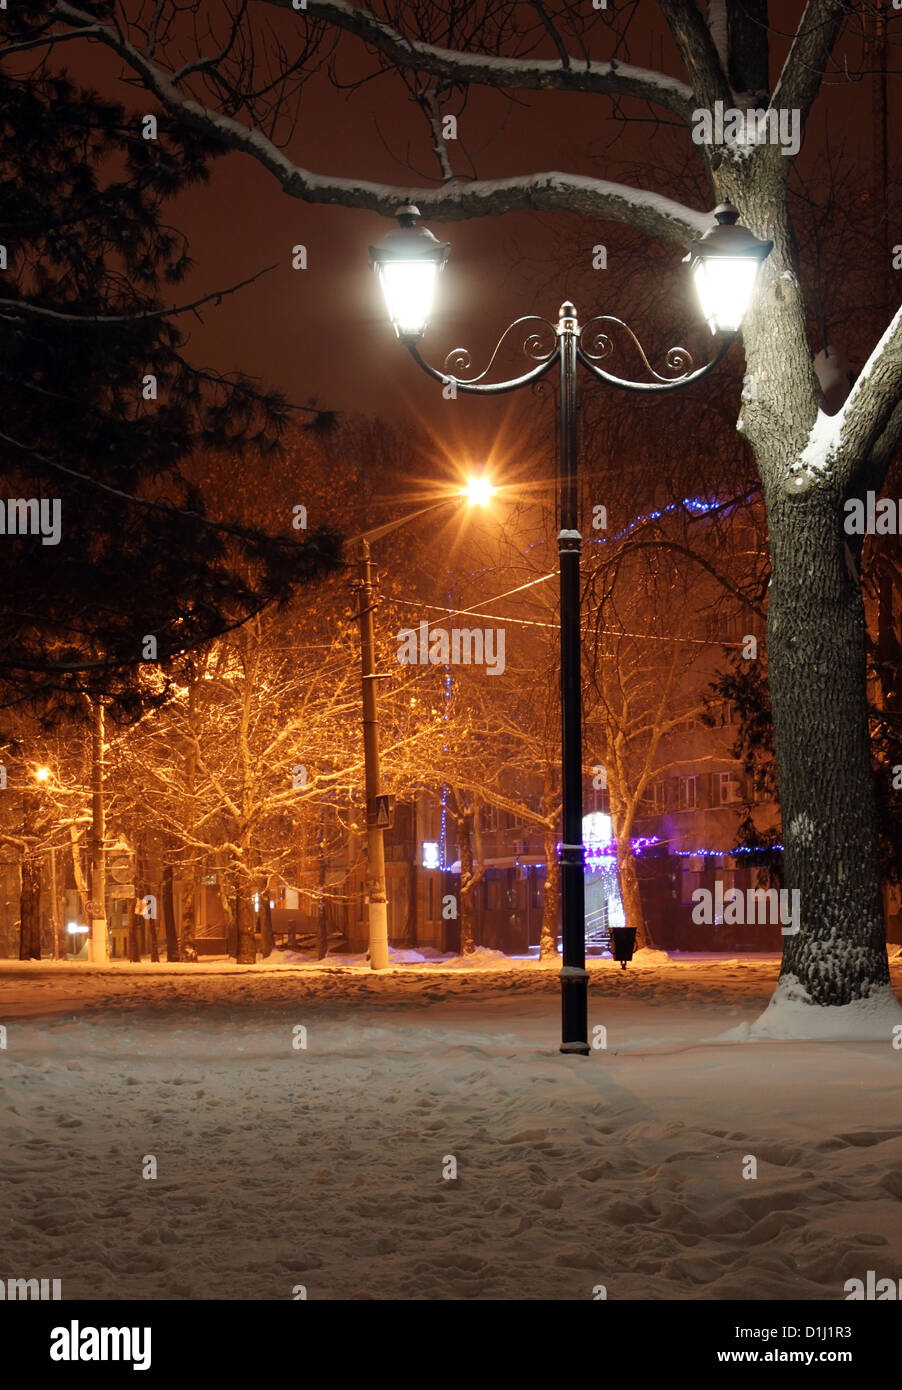 La rue lanterne allumée dans un parc la nuit en hiver Banque D'Images